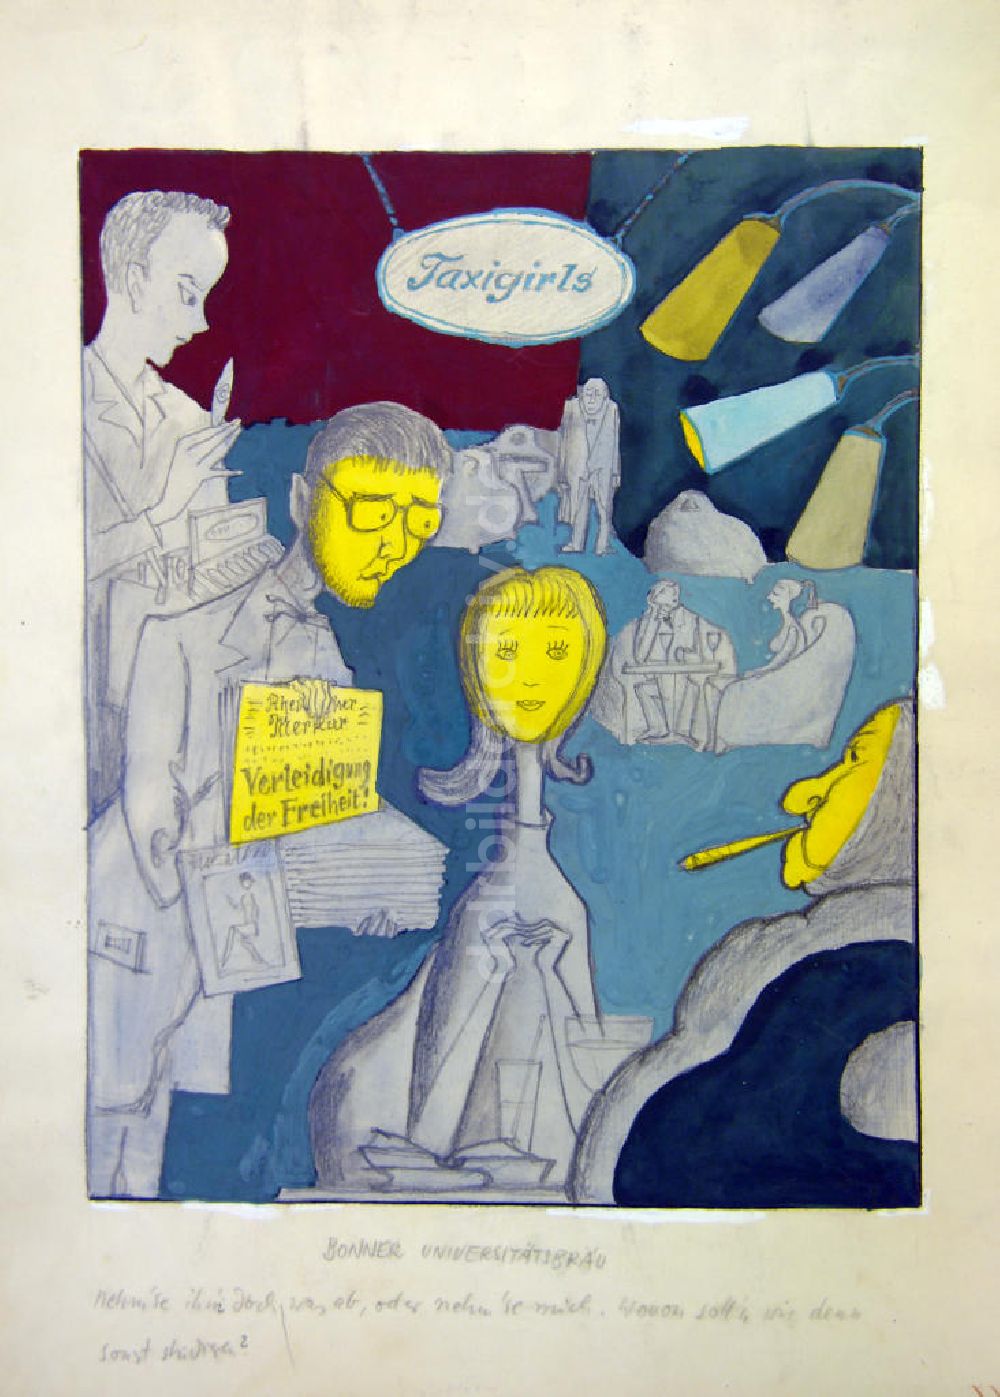 DDR-Bildarchiv: Berlin - Zeichnung von Herbert Sandberg Bonner Universitätsbräu